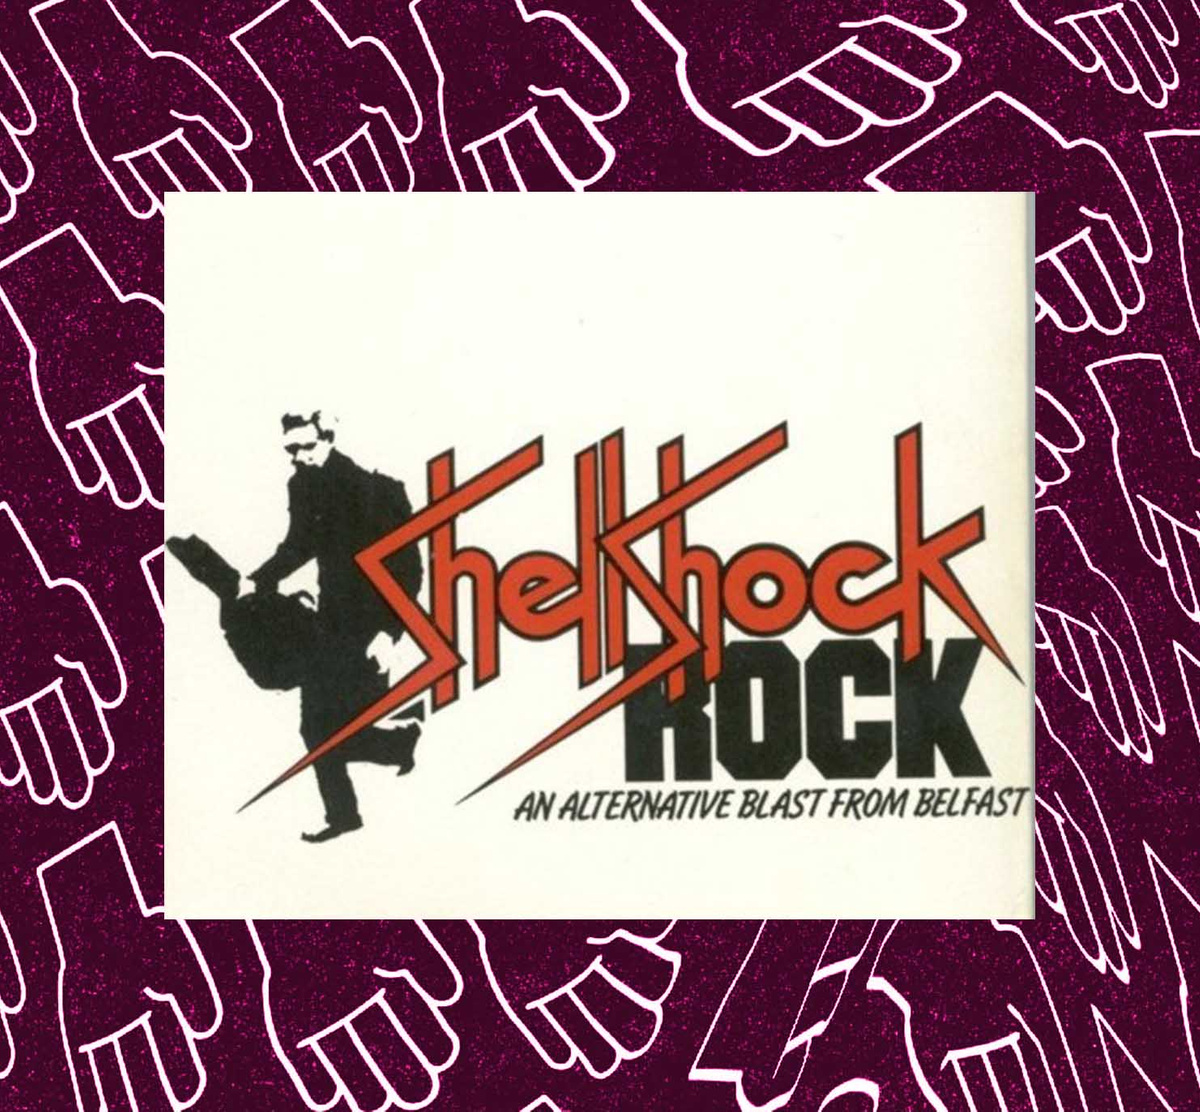 Shellshock Rock. 1979. Directed by John T. Davis